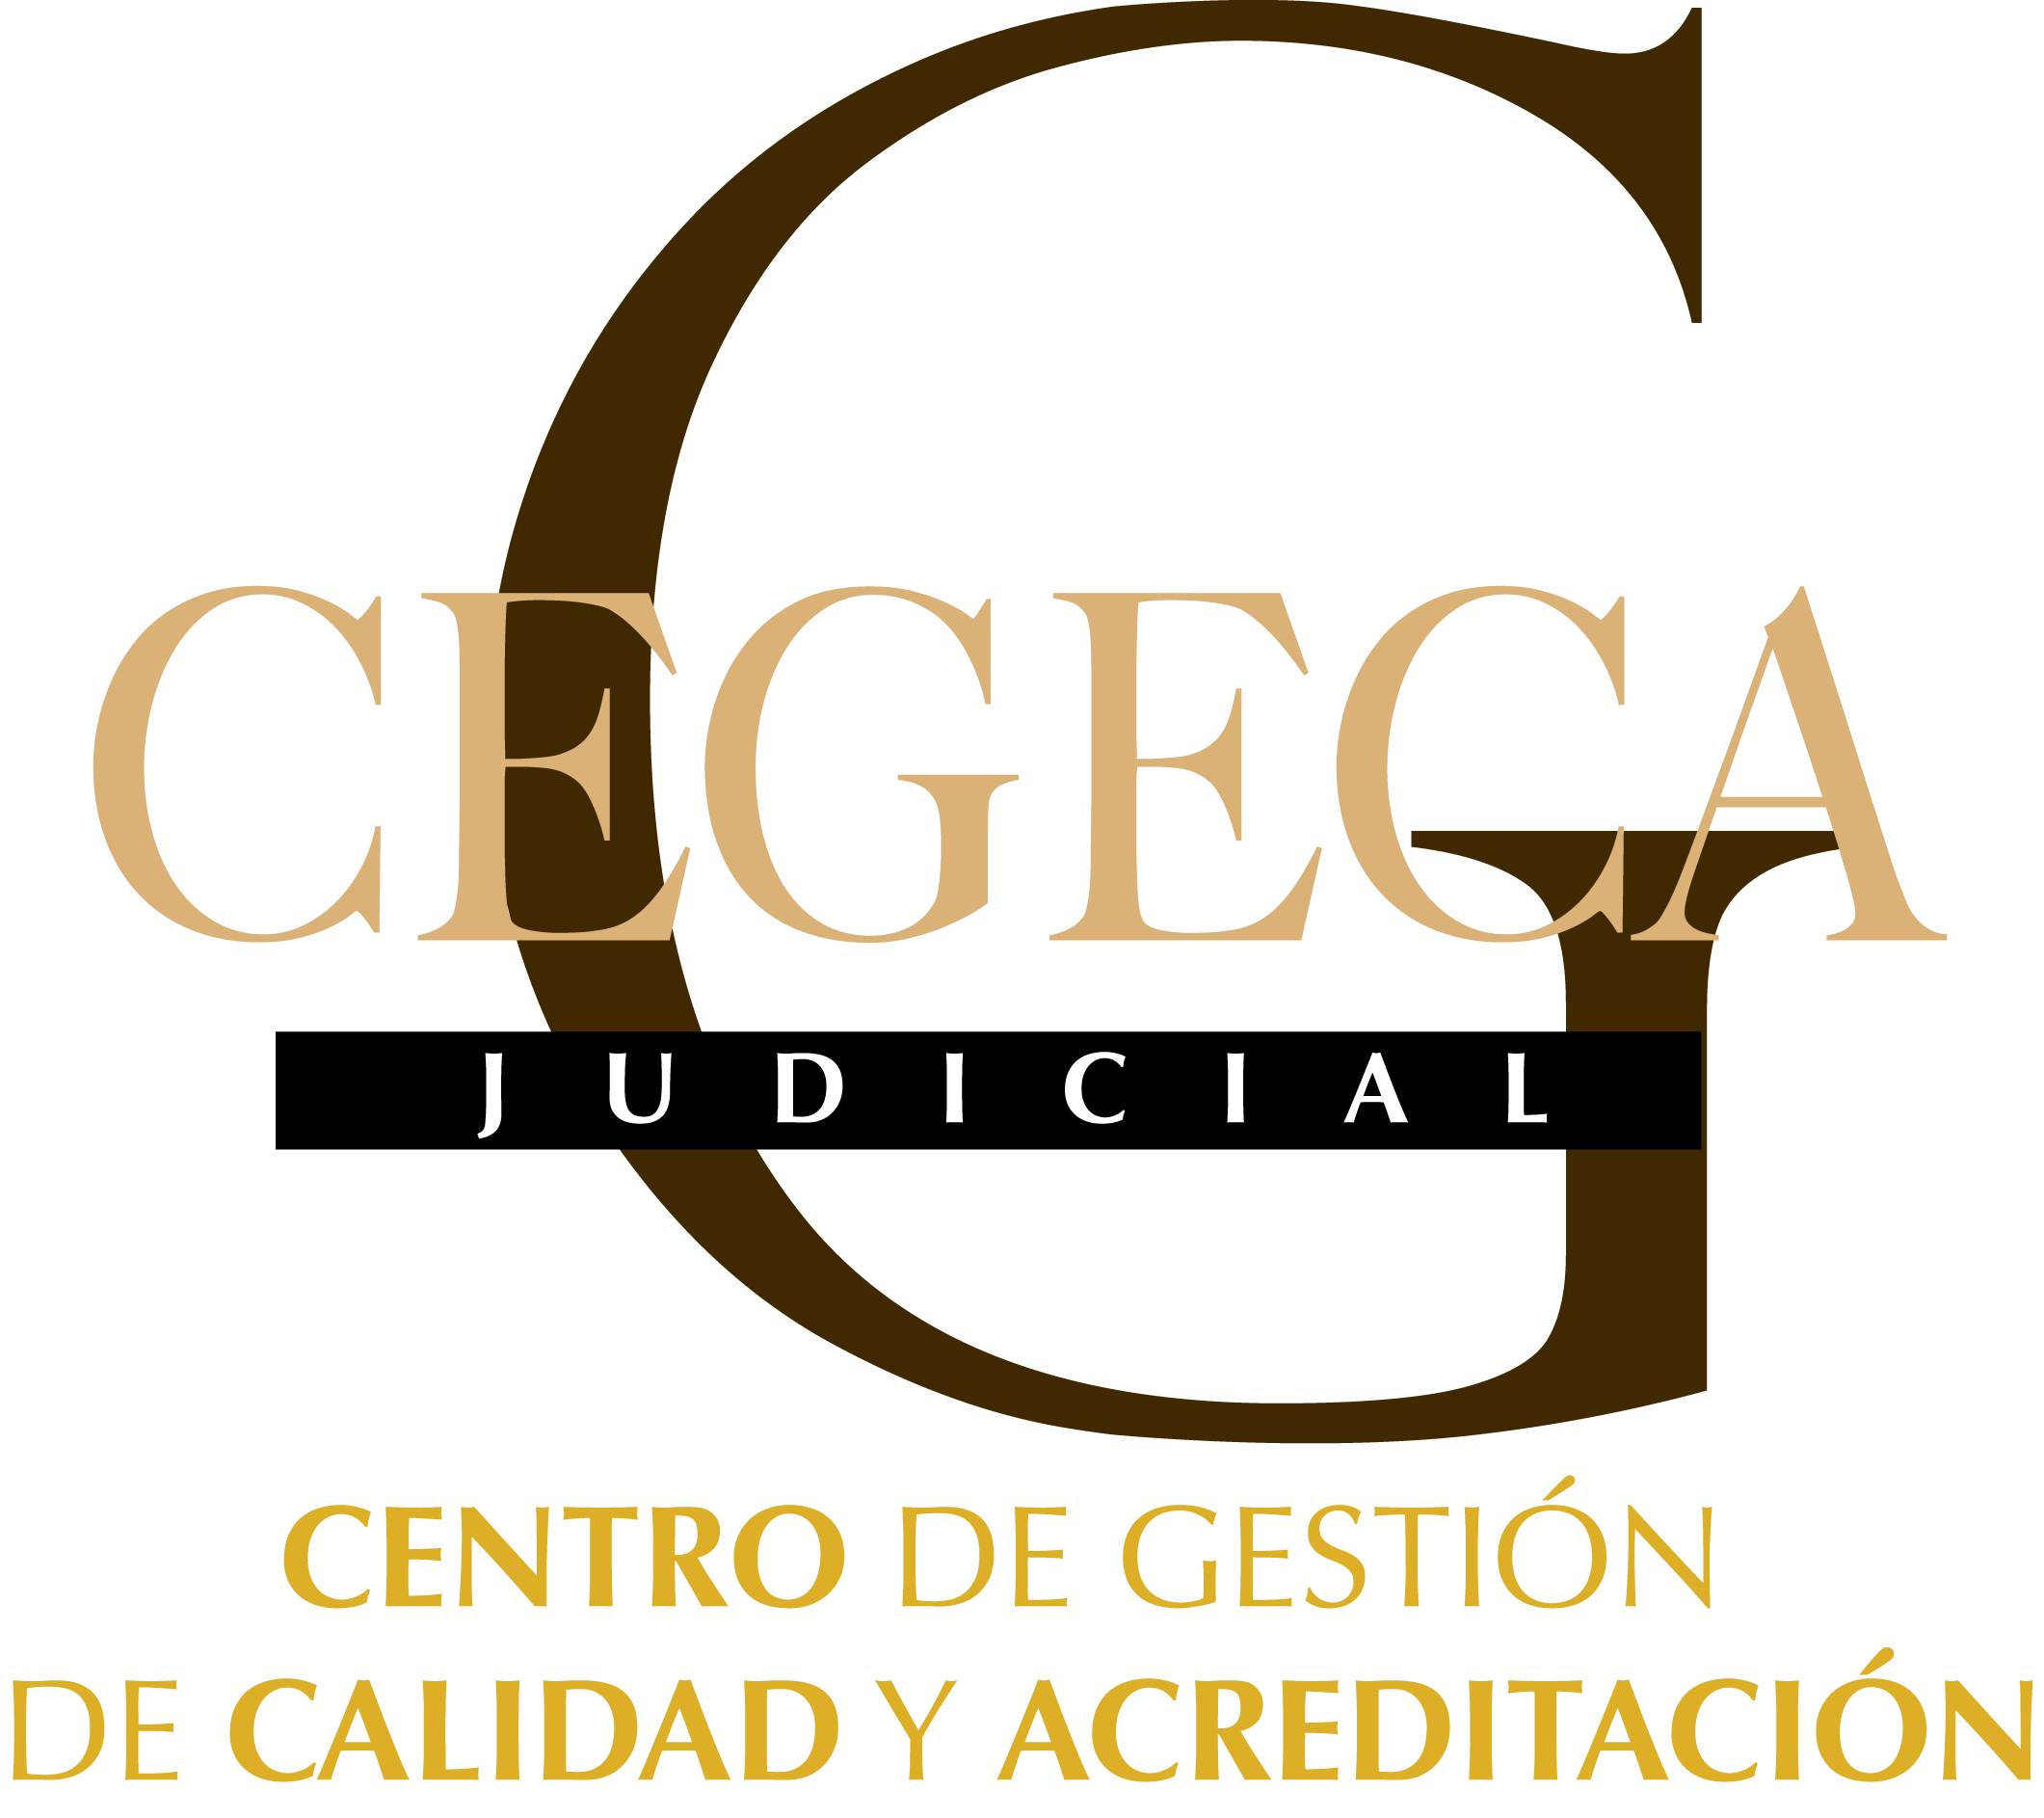 cegeca1-transparente.png